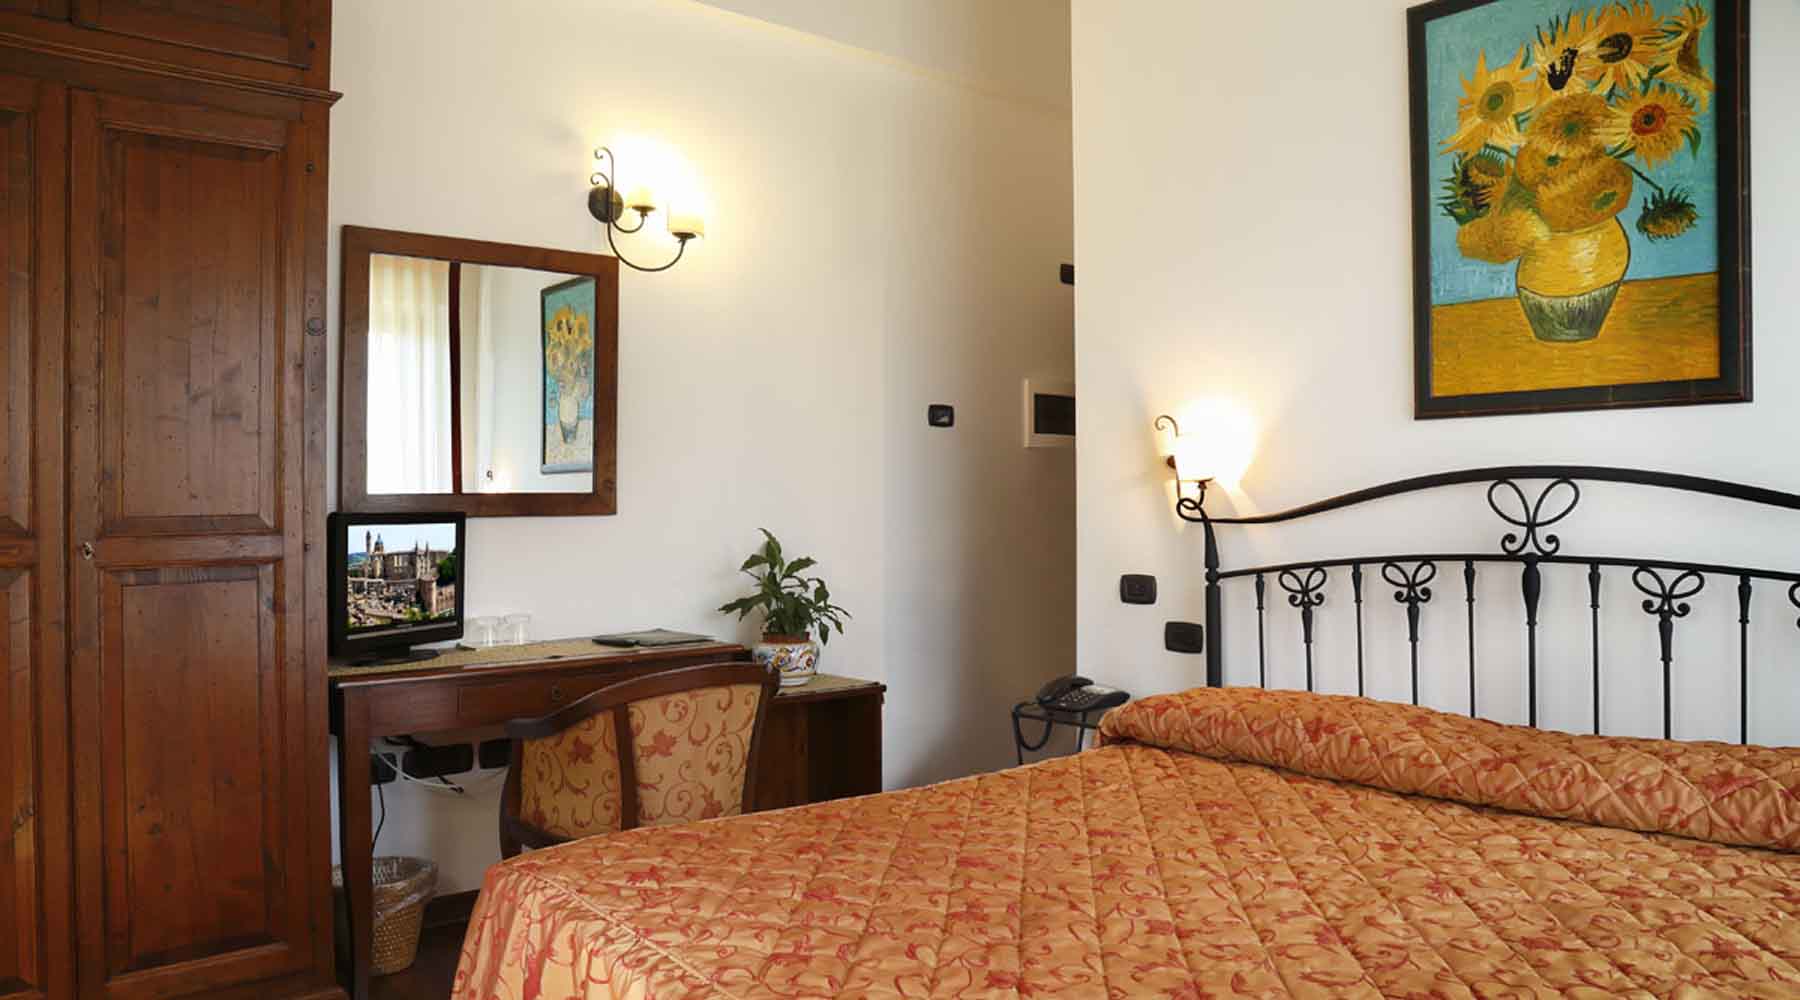 Matrimoniale Superior Albergo - Hotel - Urbino - Marche